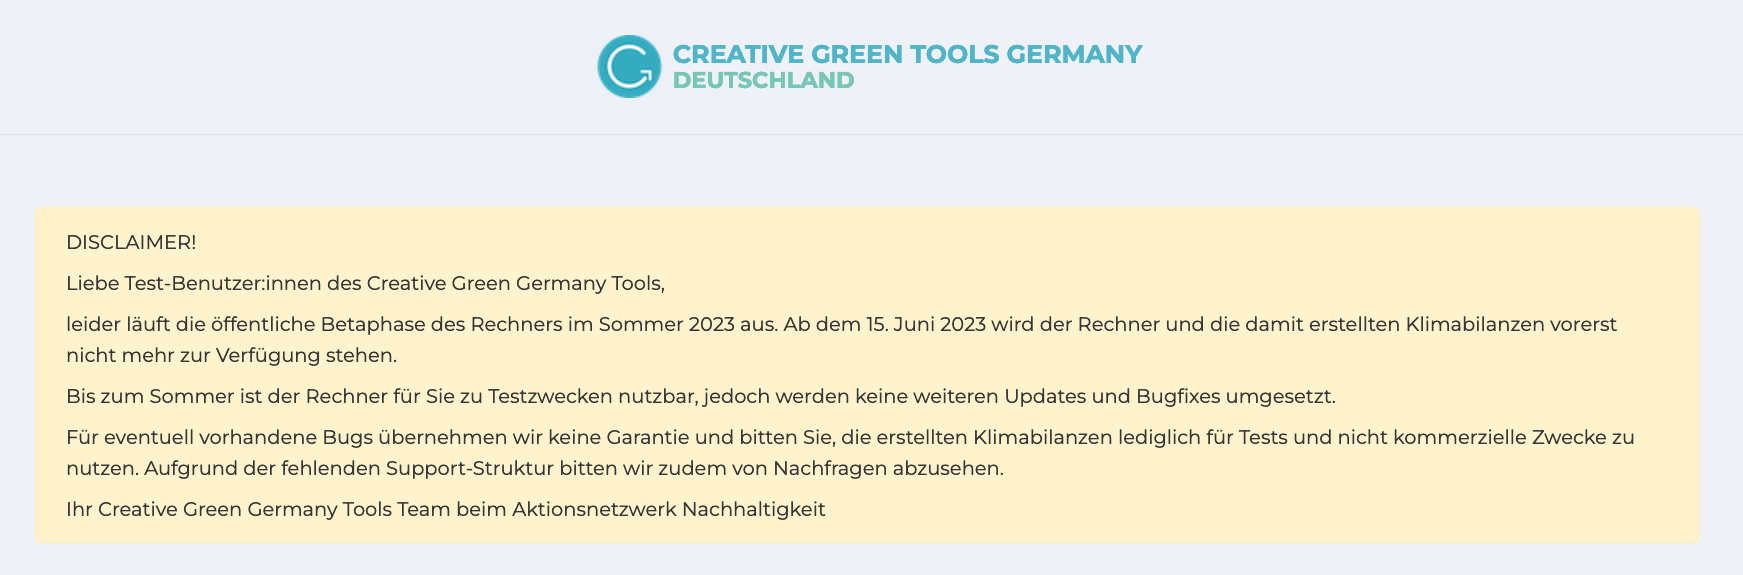 Das Ende der Creative Green Tools